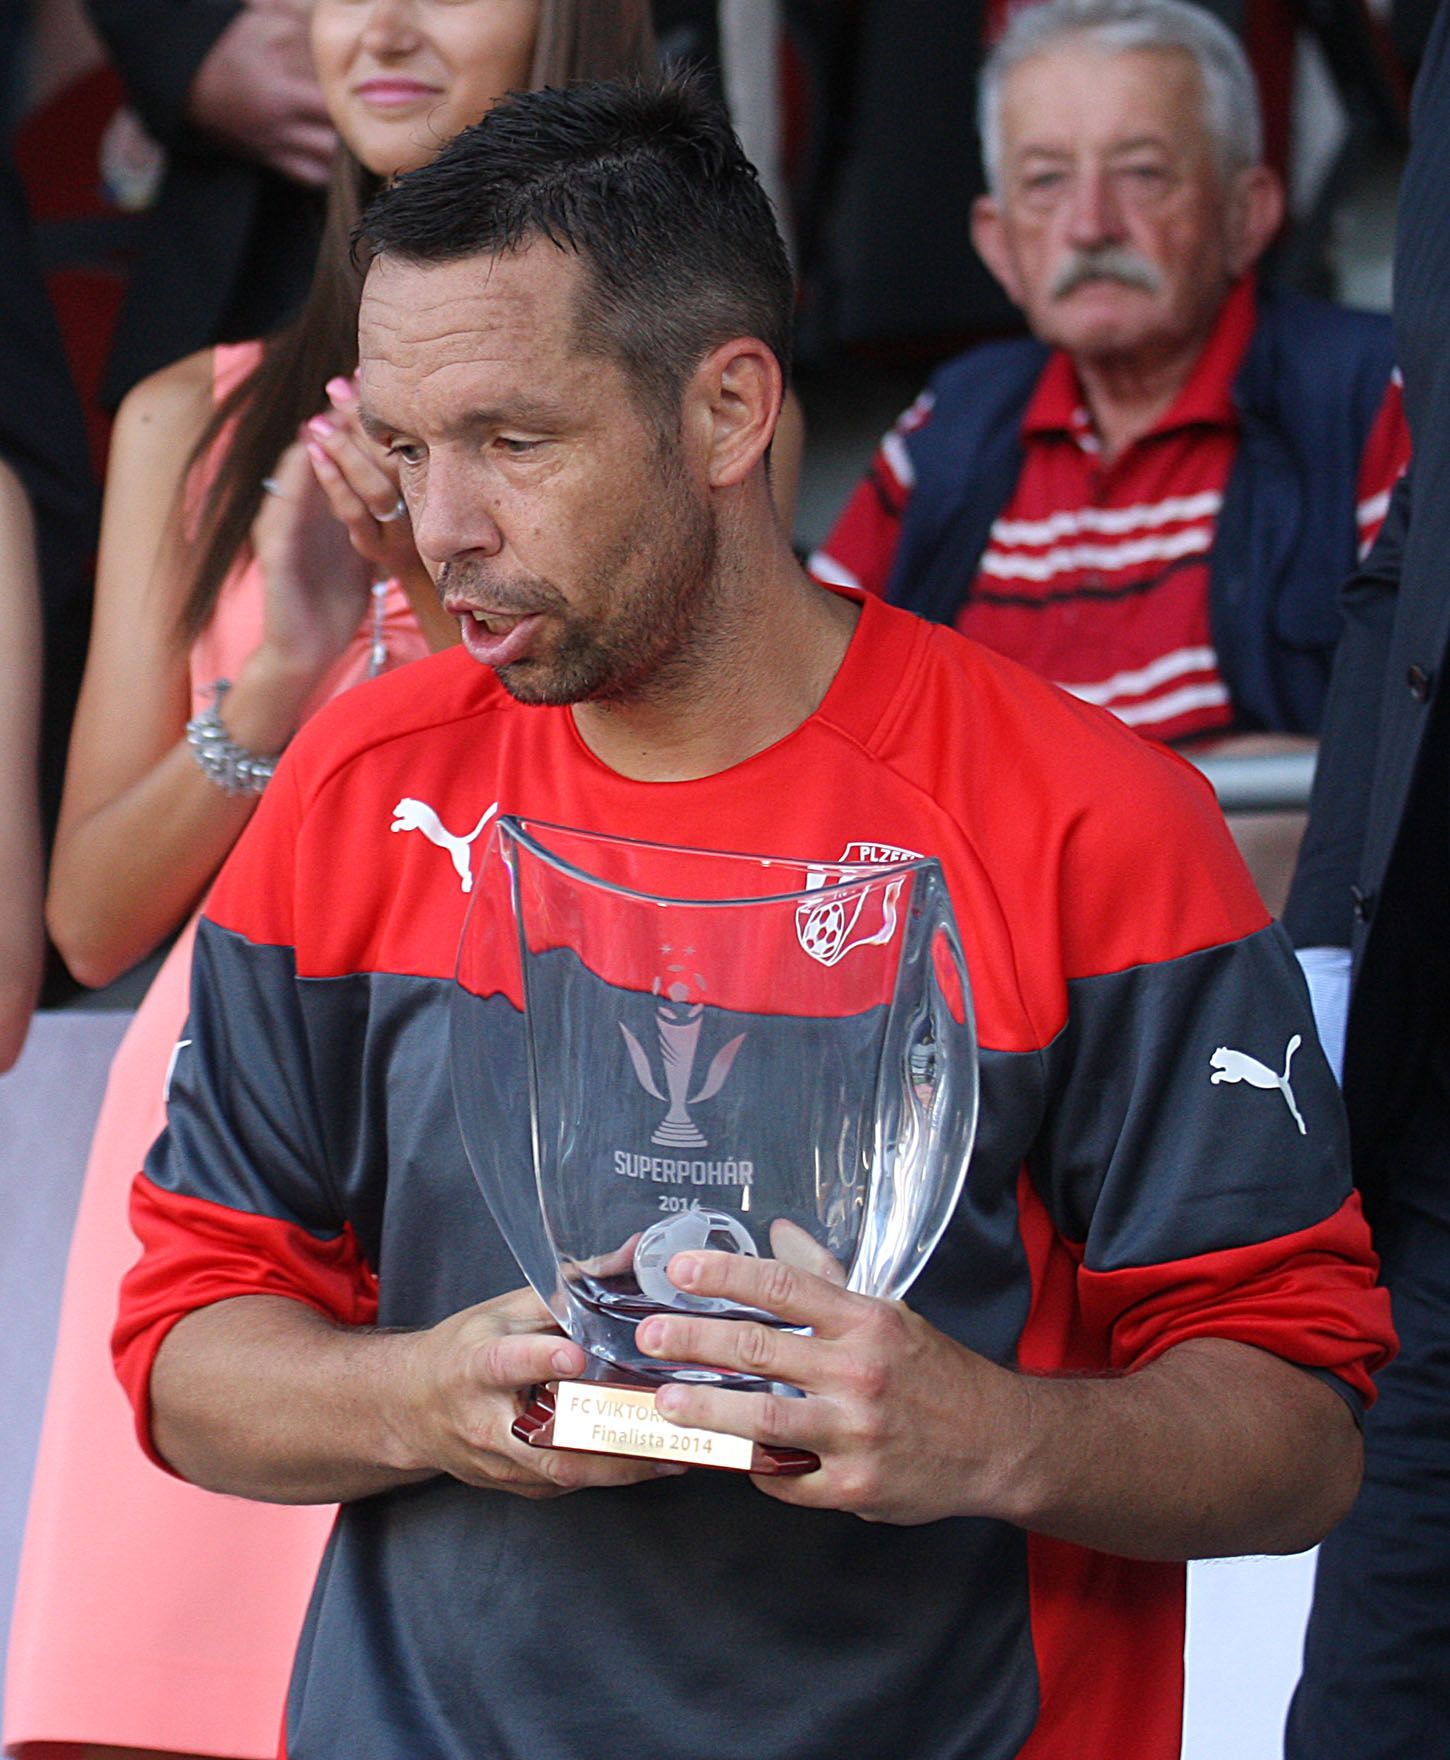 Superpohár 2014, Sparta-Plzeň: Pavel Horváth s trofejí pro poraženého